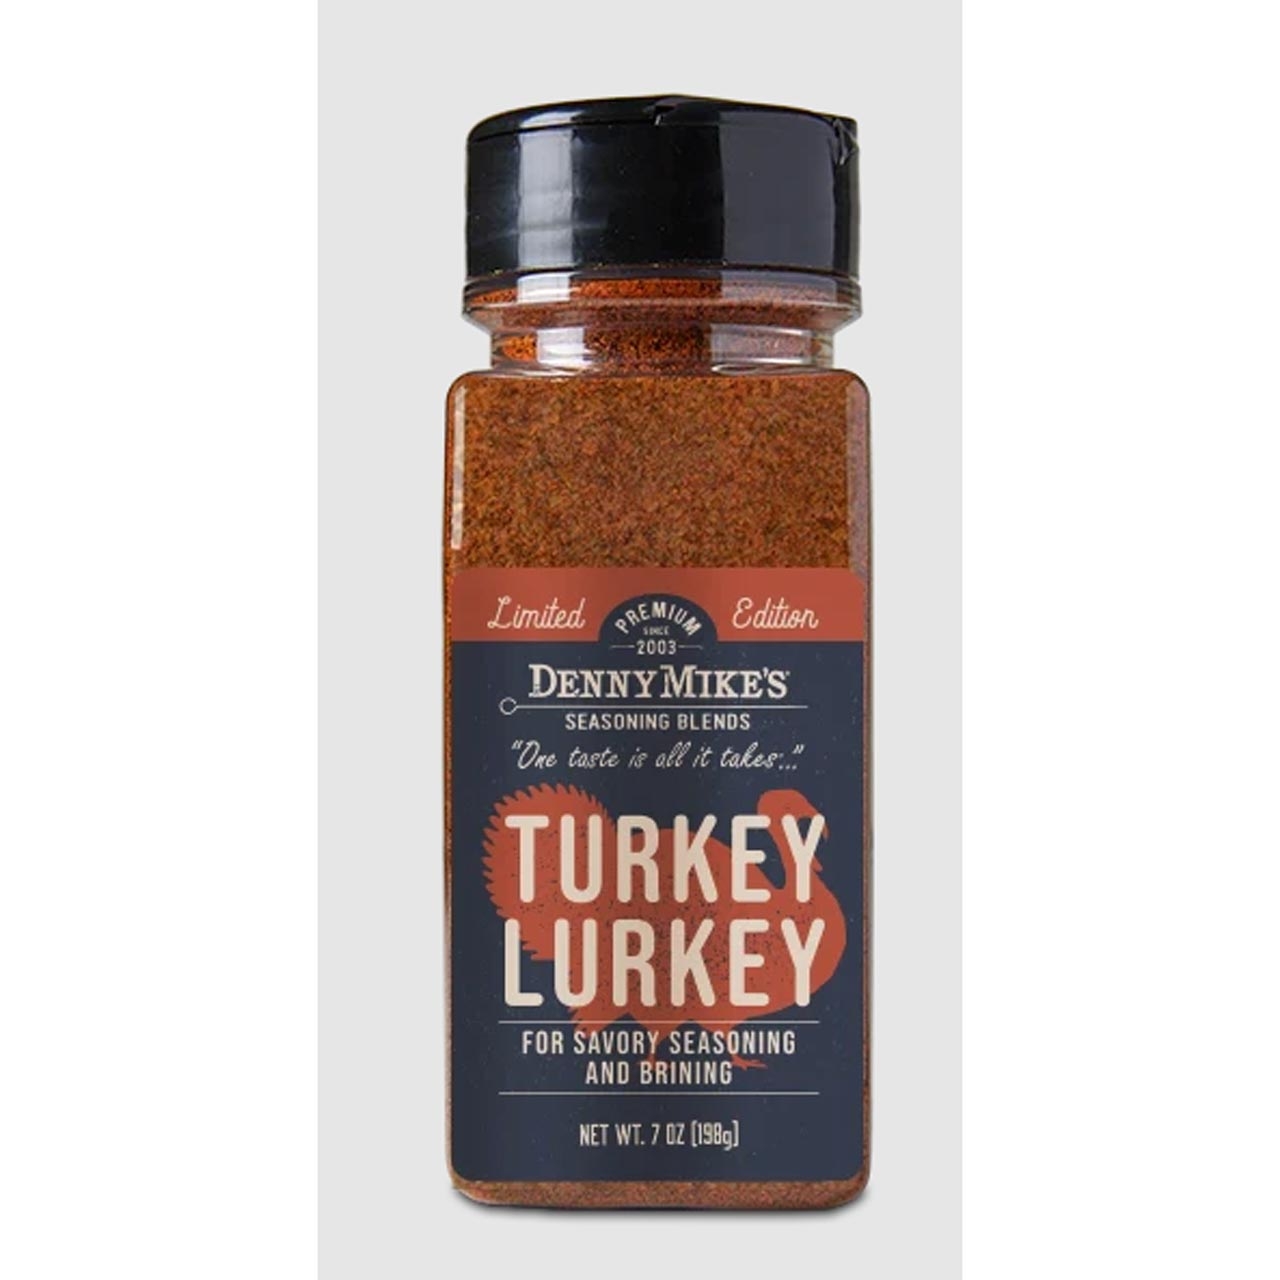 Denny Mike ´s Turkey Lurkey Seasoning Blend 198g